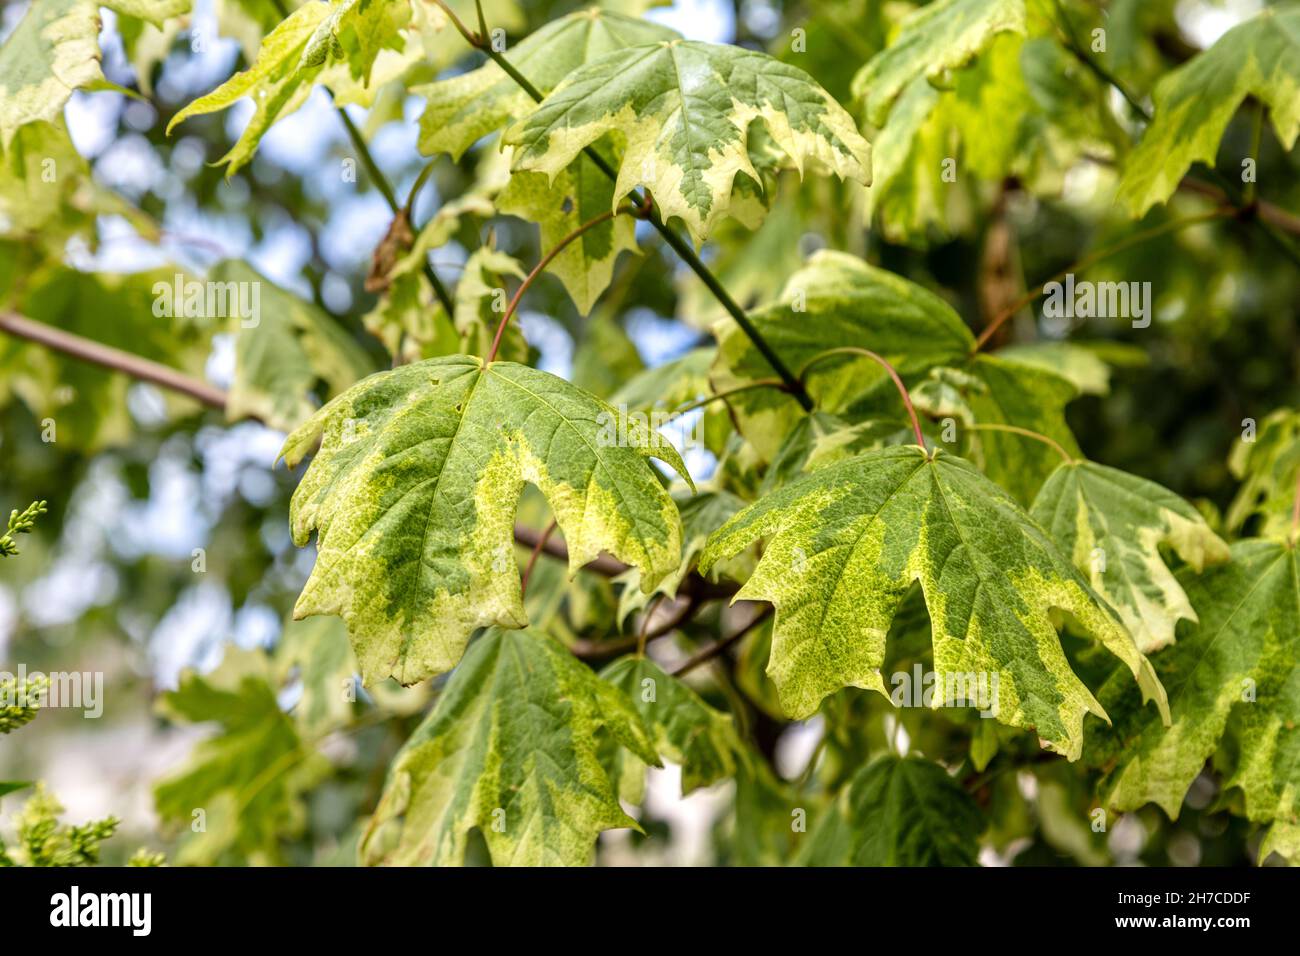 Gros plan sur les feuilles d'un érable de Norvège (Acer platanoides 'Dummondii'), exposition Forest for change, Courtyard of Somerset House, Londres, Royaume-Uni Banque D'Images